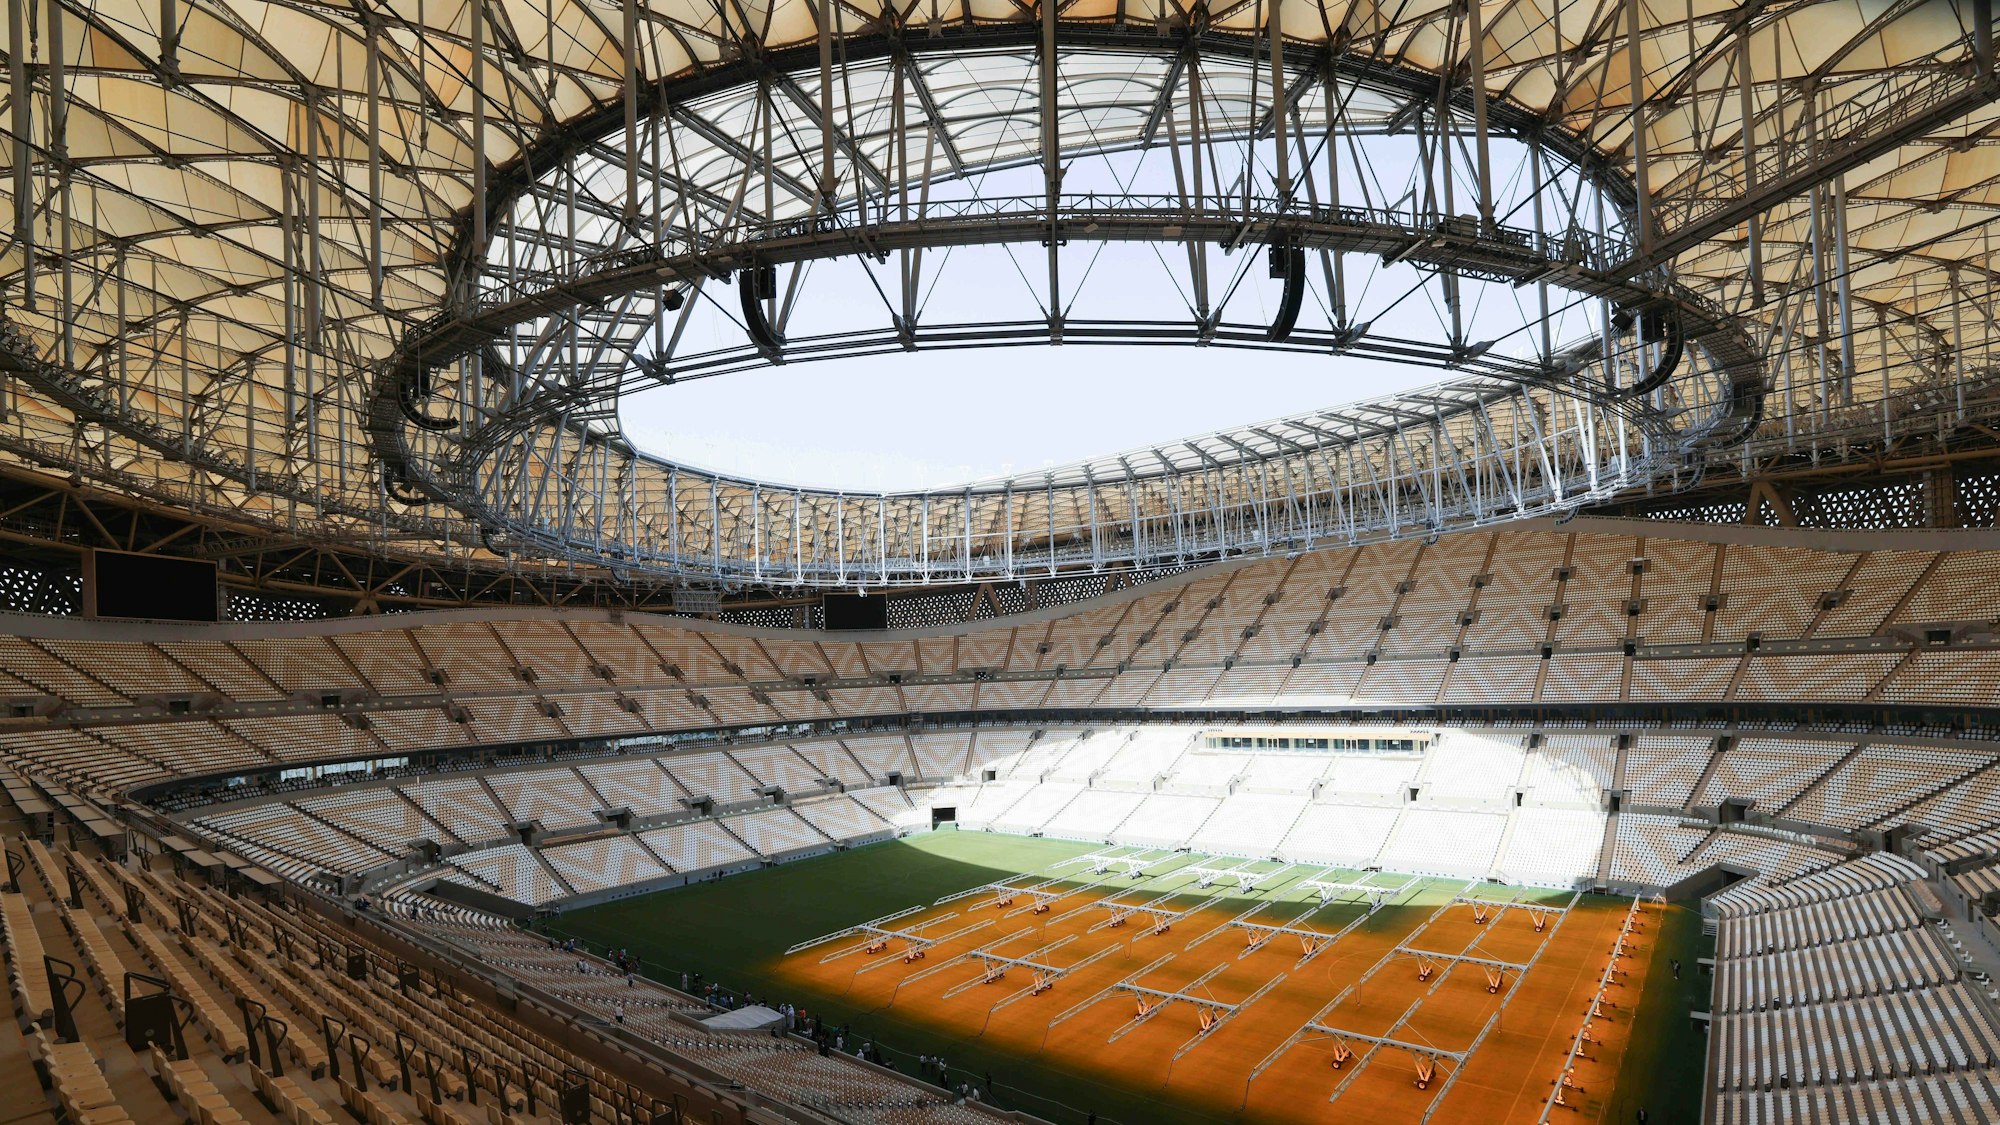 Zu sehen ist das Innere des Fußballstadions, von oben aus einer Tribüne fotografiert. Es ist Tag und die Sonne scheint in das Stadion.